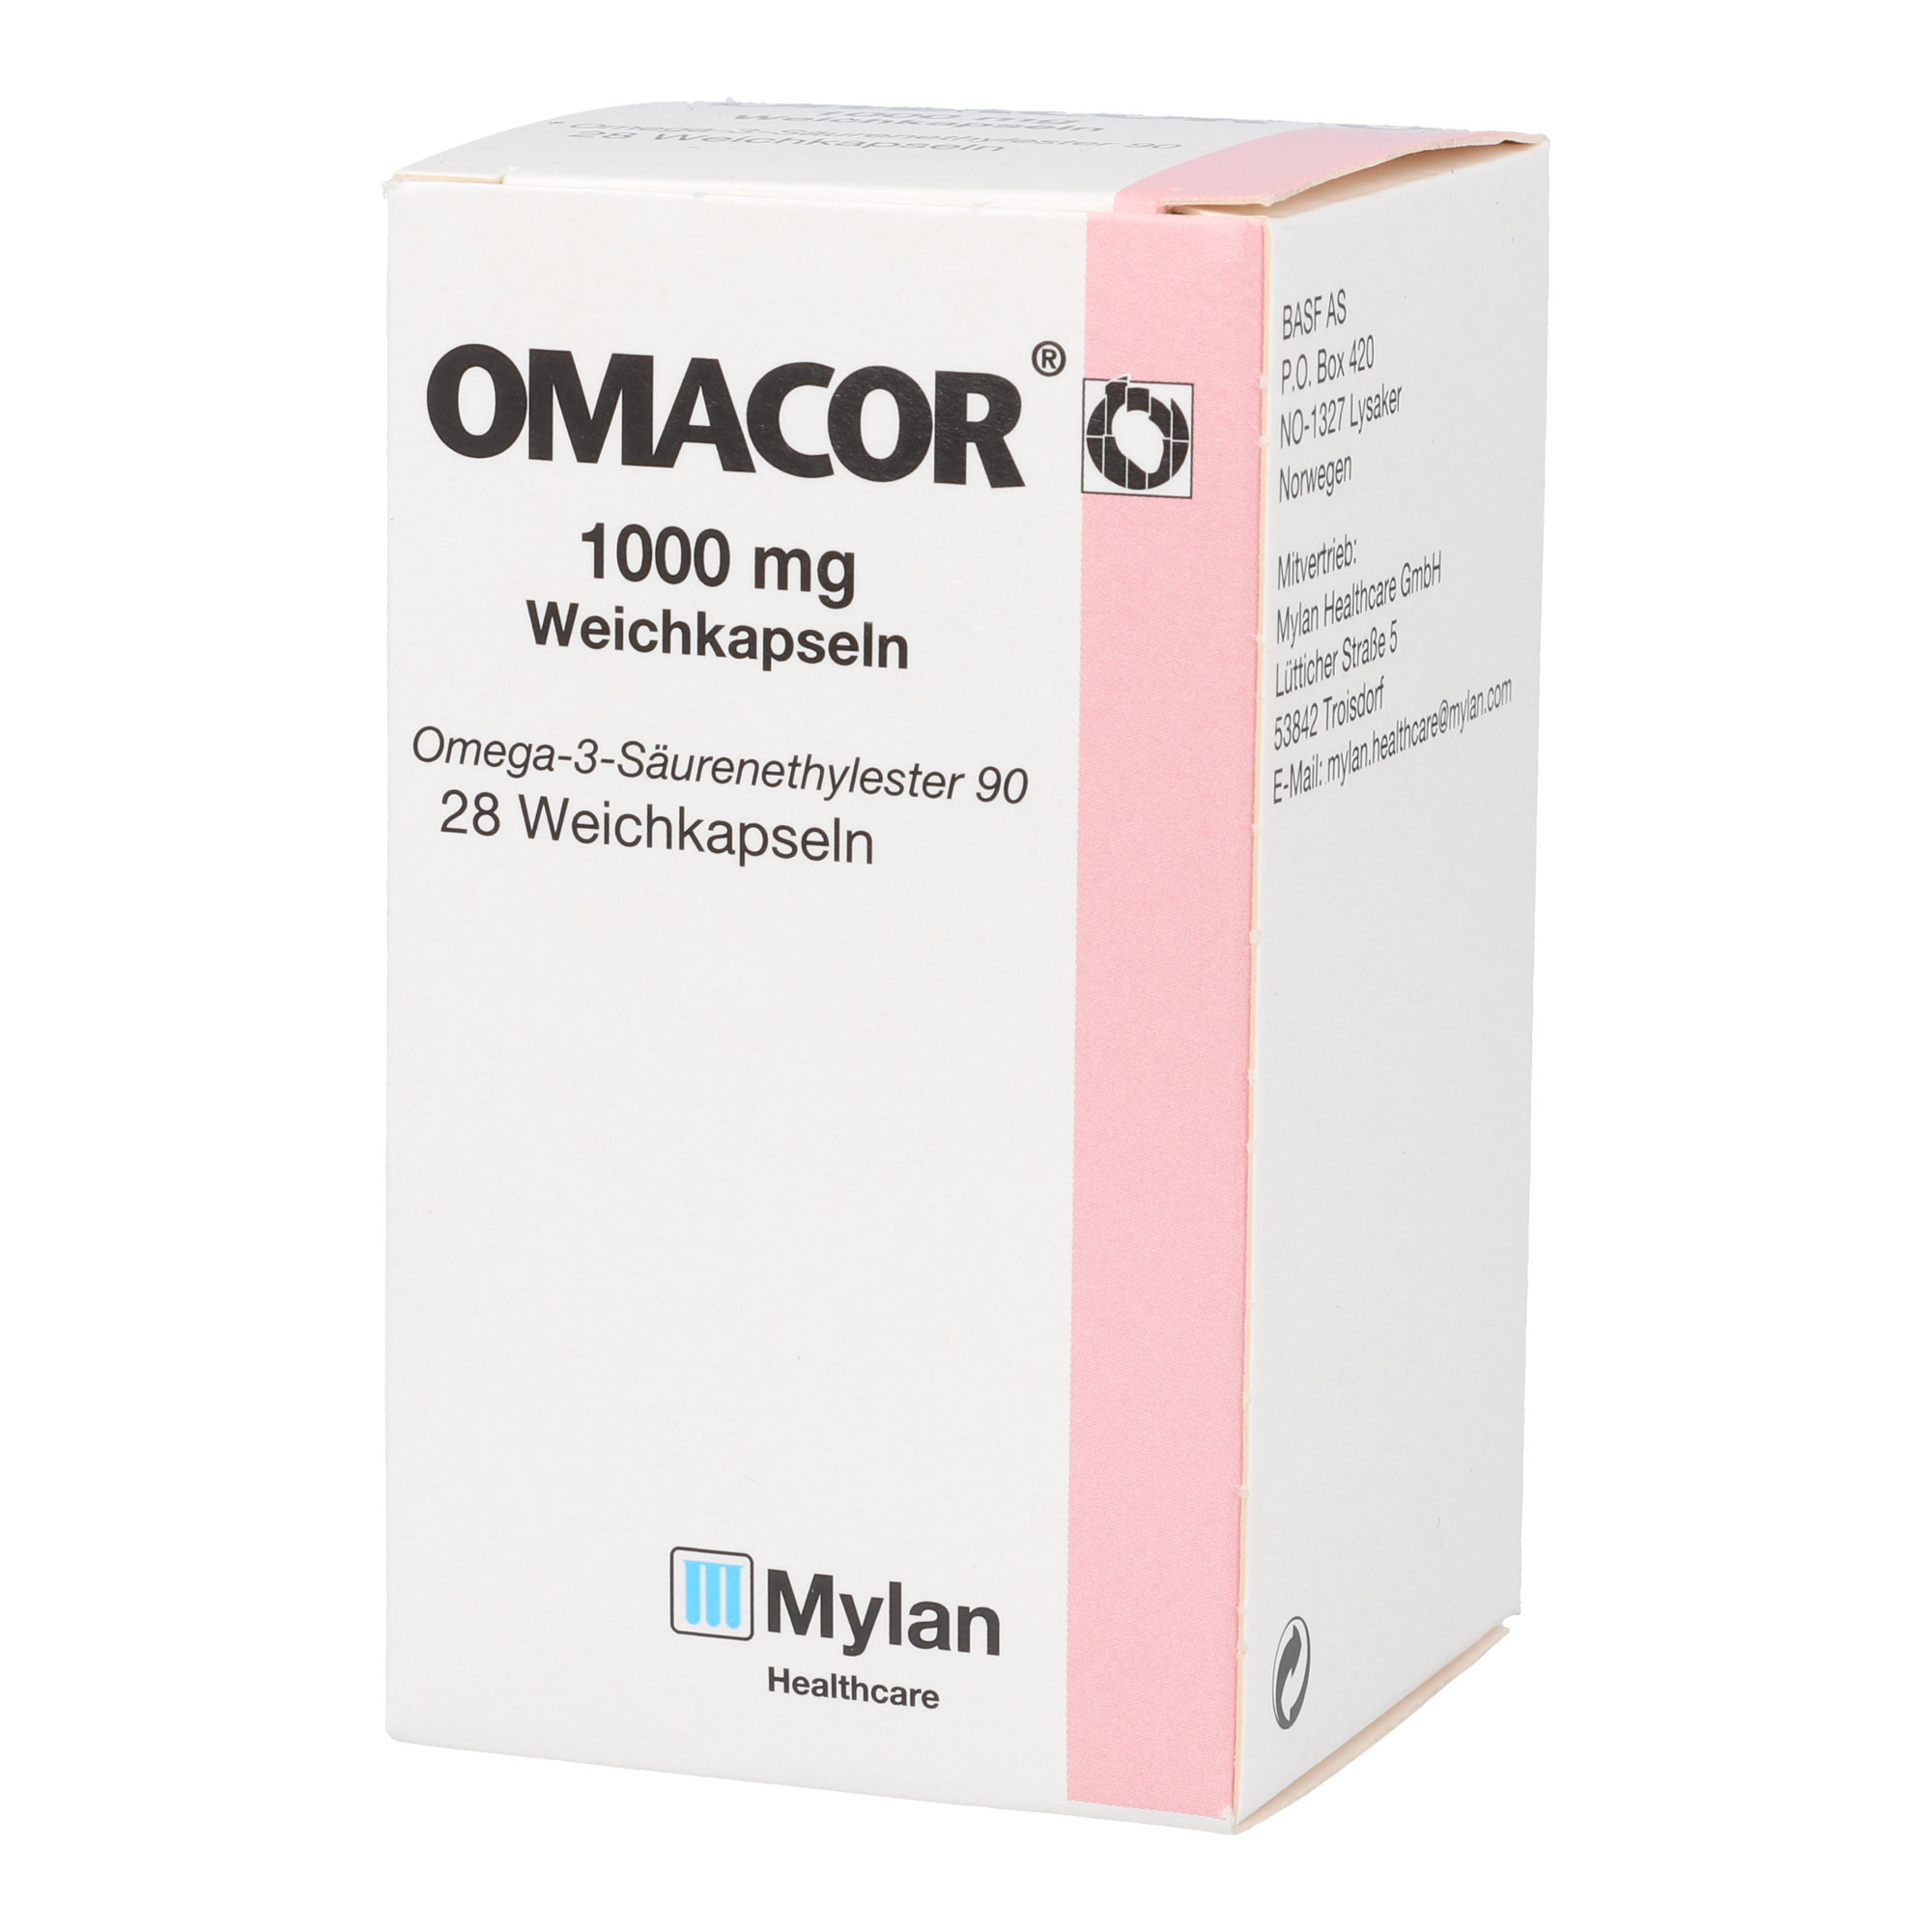 Weichkapseln mit Omega-3-Säurenethylester 90 für bestimmte Formen von erhöhten Blutfettwerden, bei nicht ausreichenden giätischen Maßnahmen.